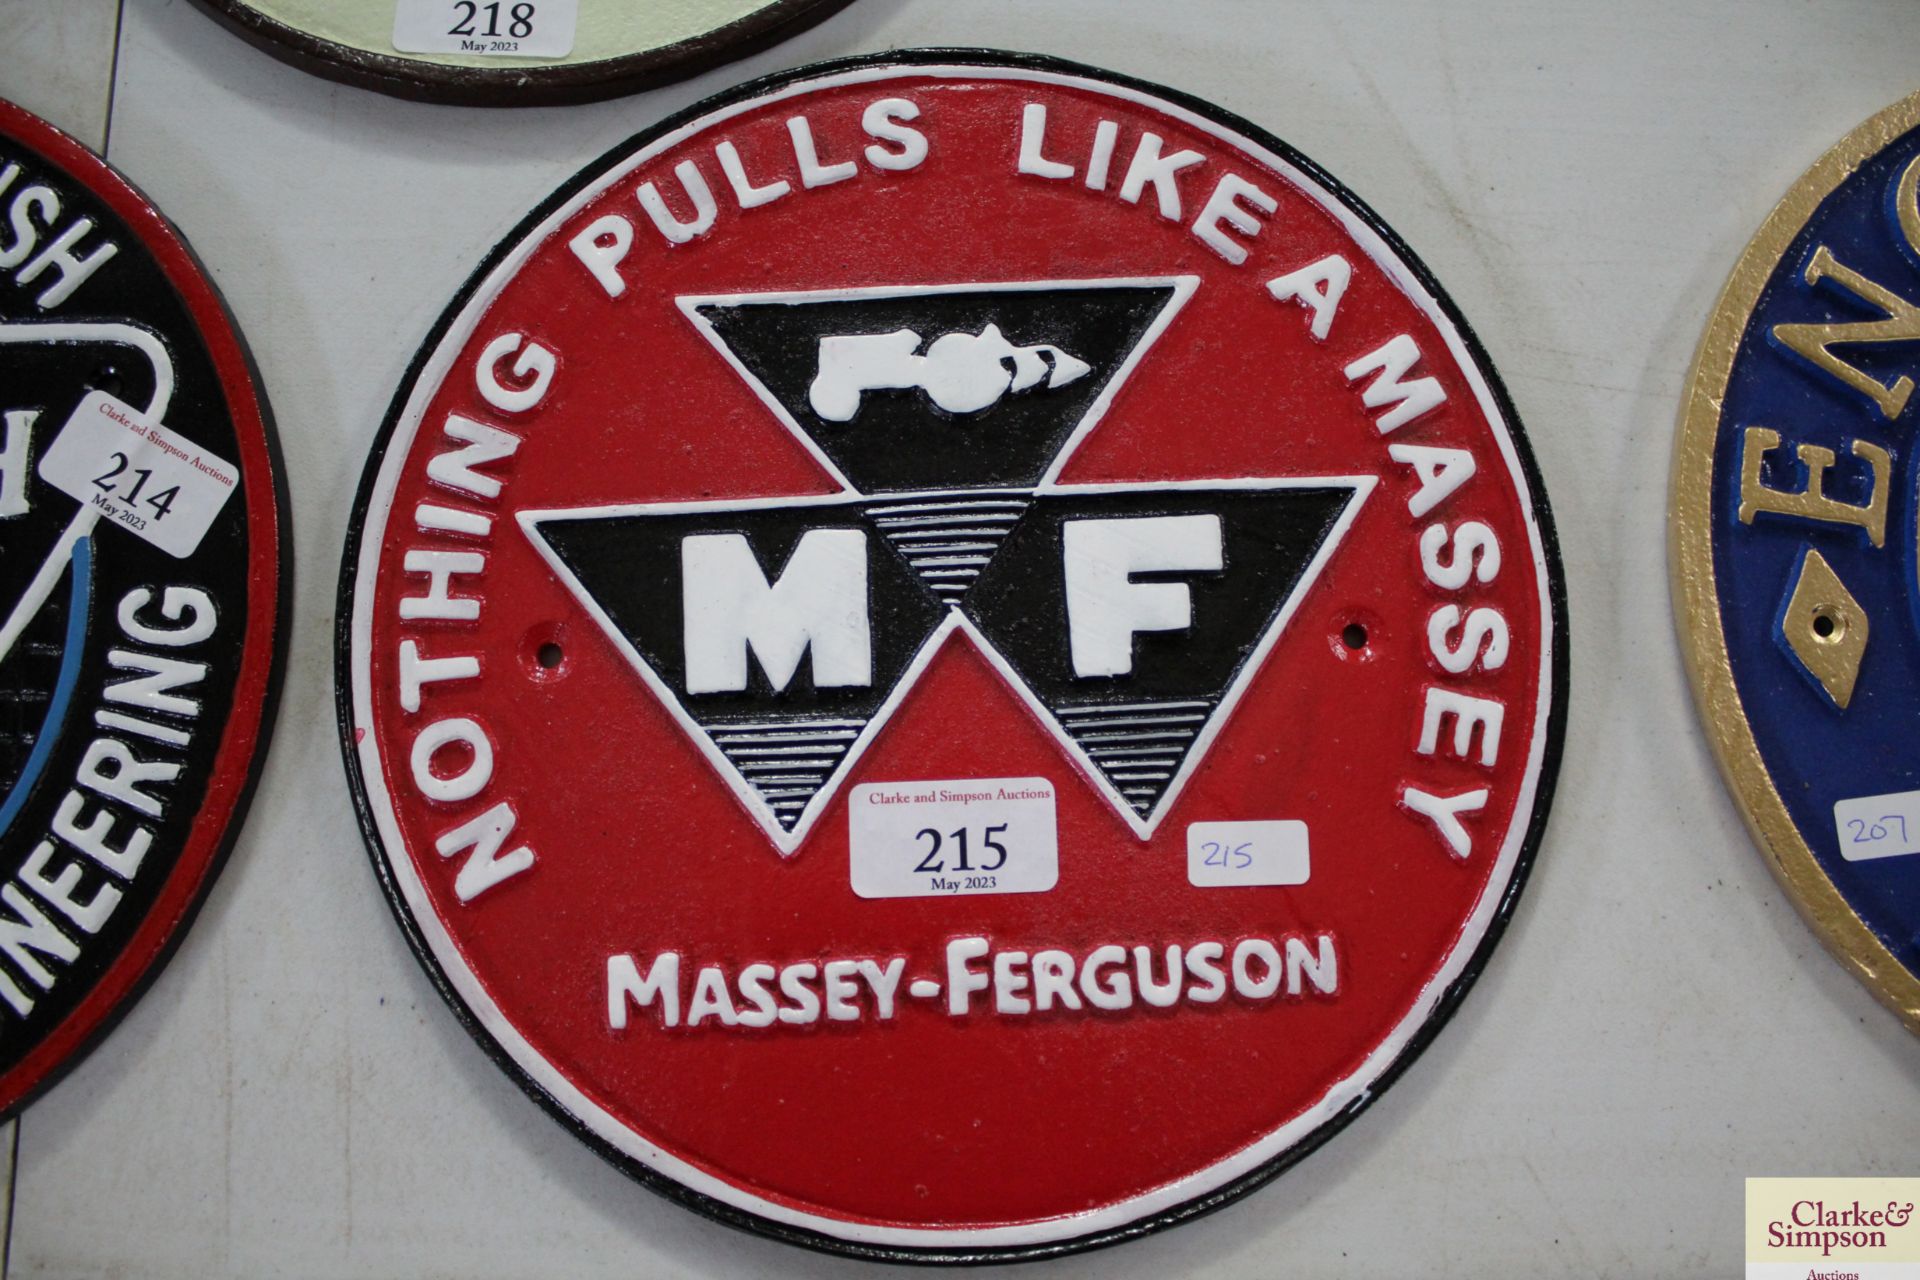 Cast Massey Ferguson sign. V